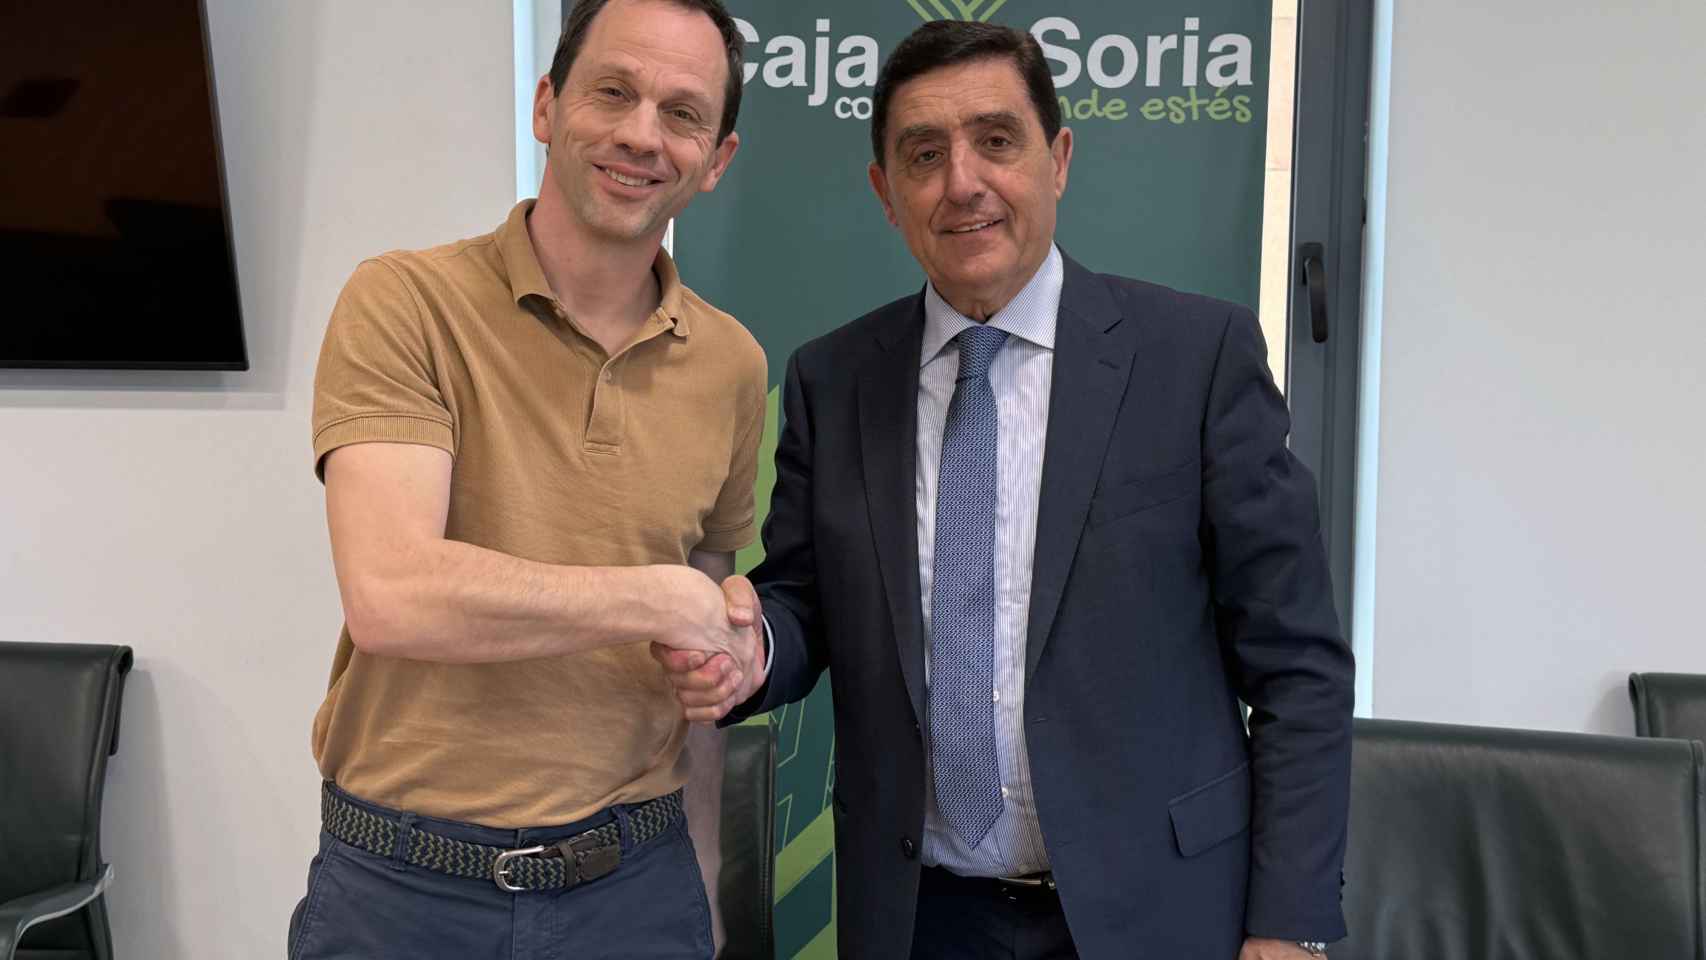 Caja Rural de Soria y Club Soria Baloncesto renuevan su acuerdo de colaboración